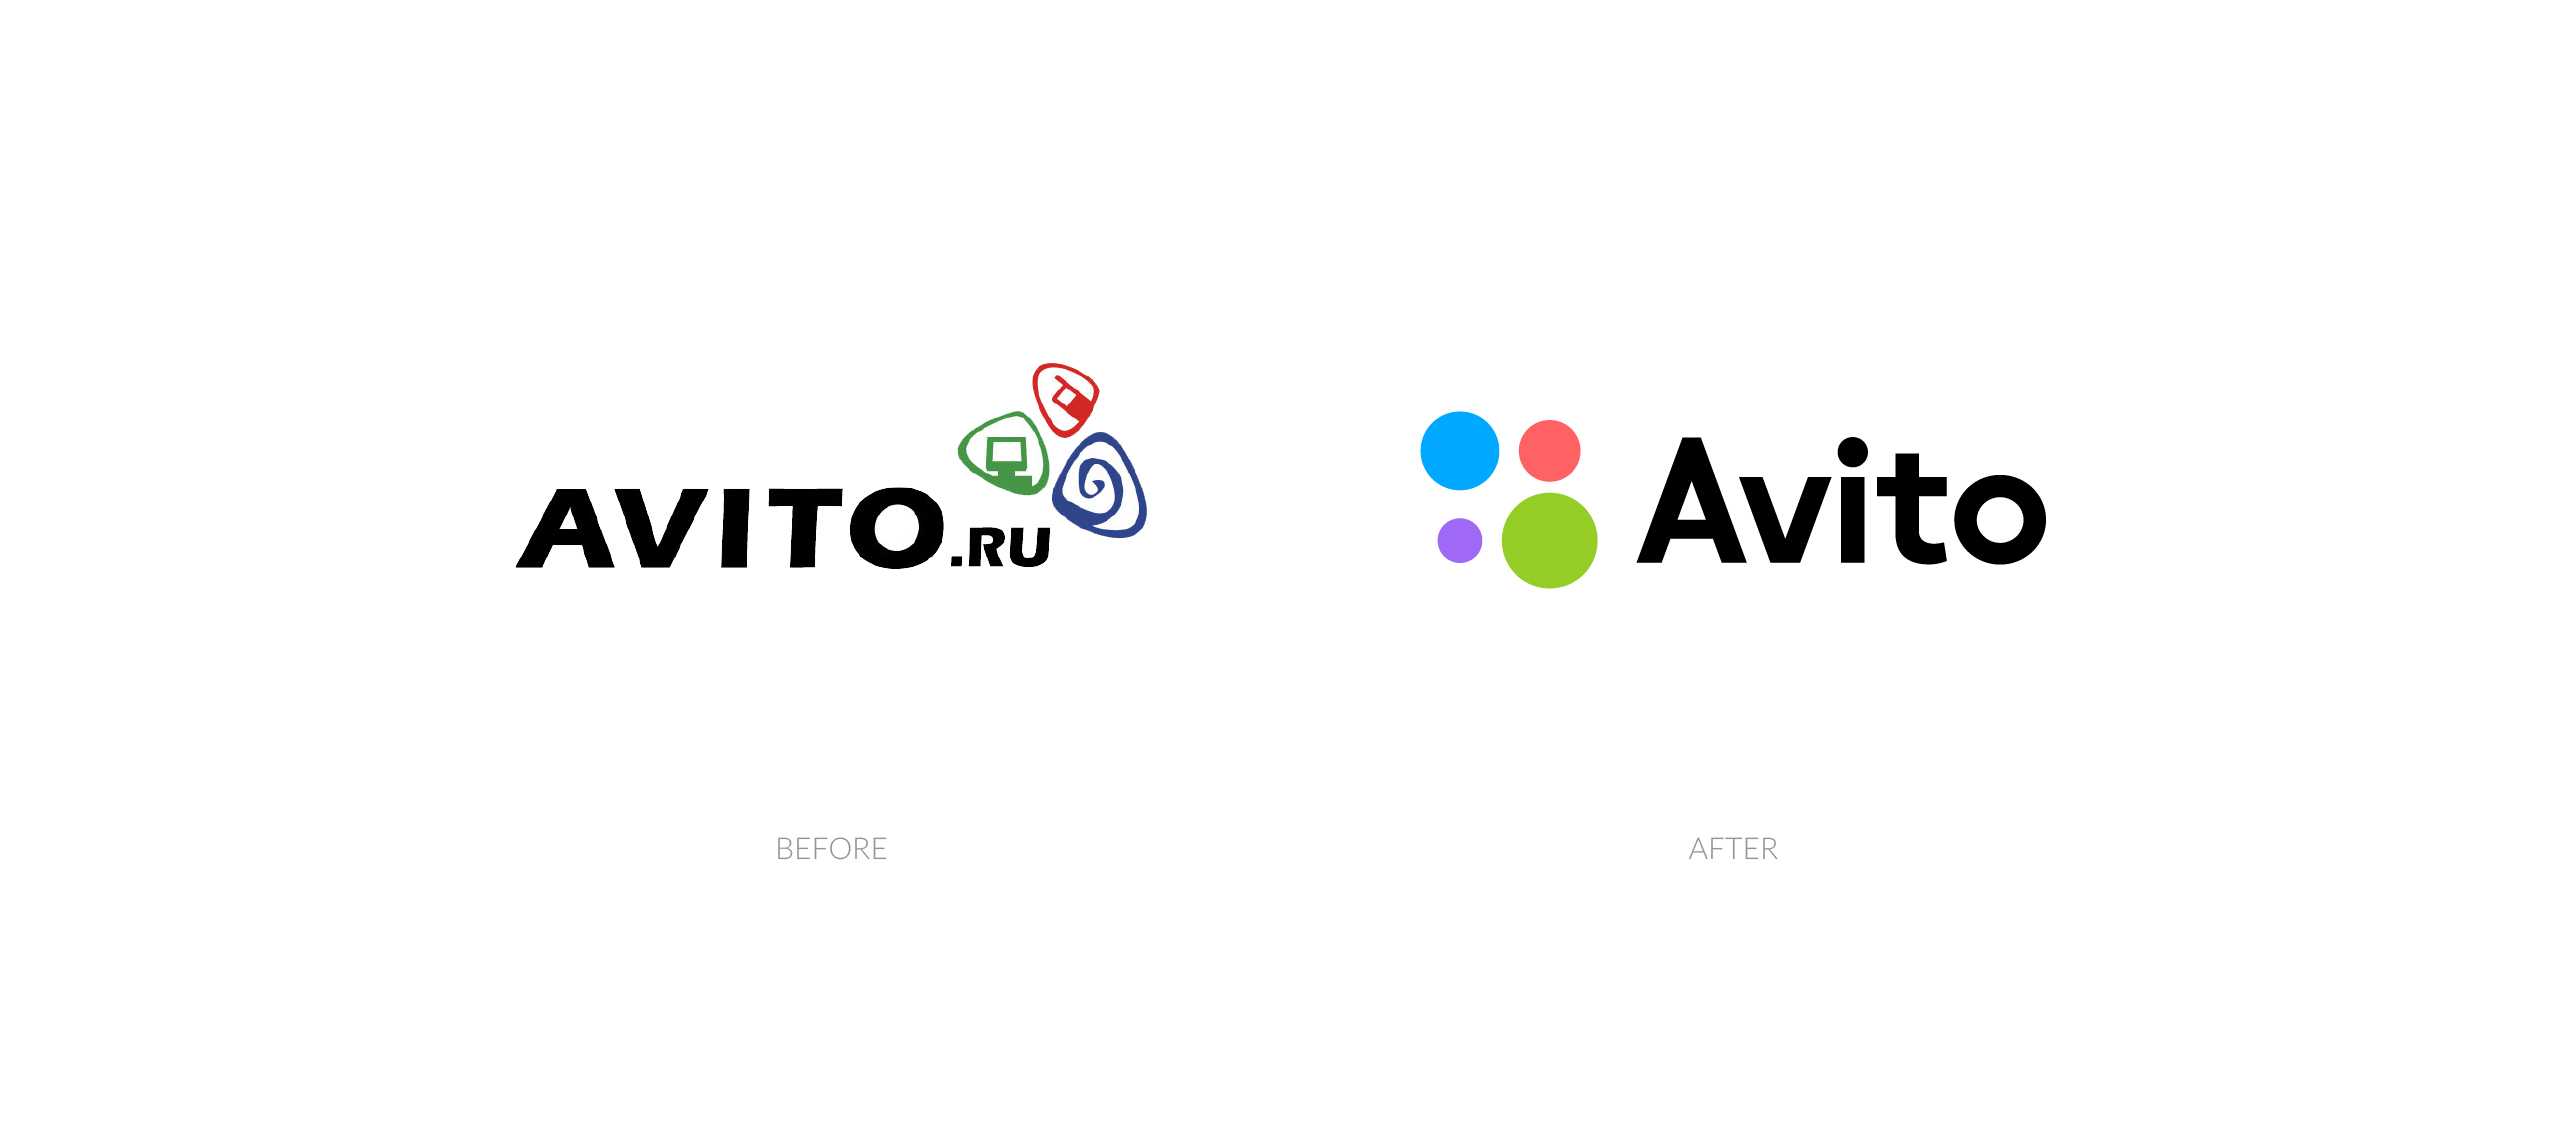 J fdbnj. Авито. Avito лого. Авито старый логотип. Авито новый логотип.